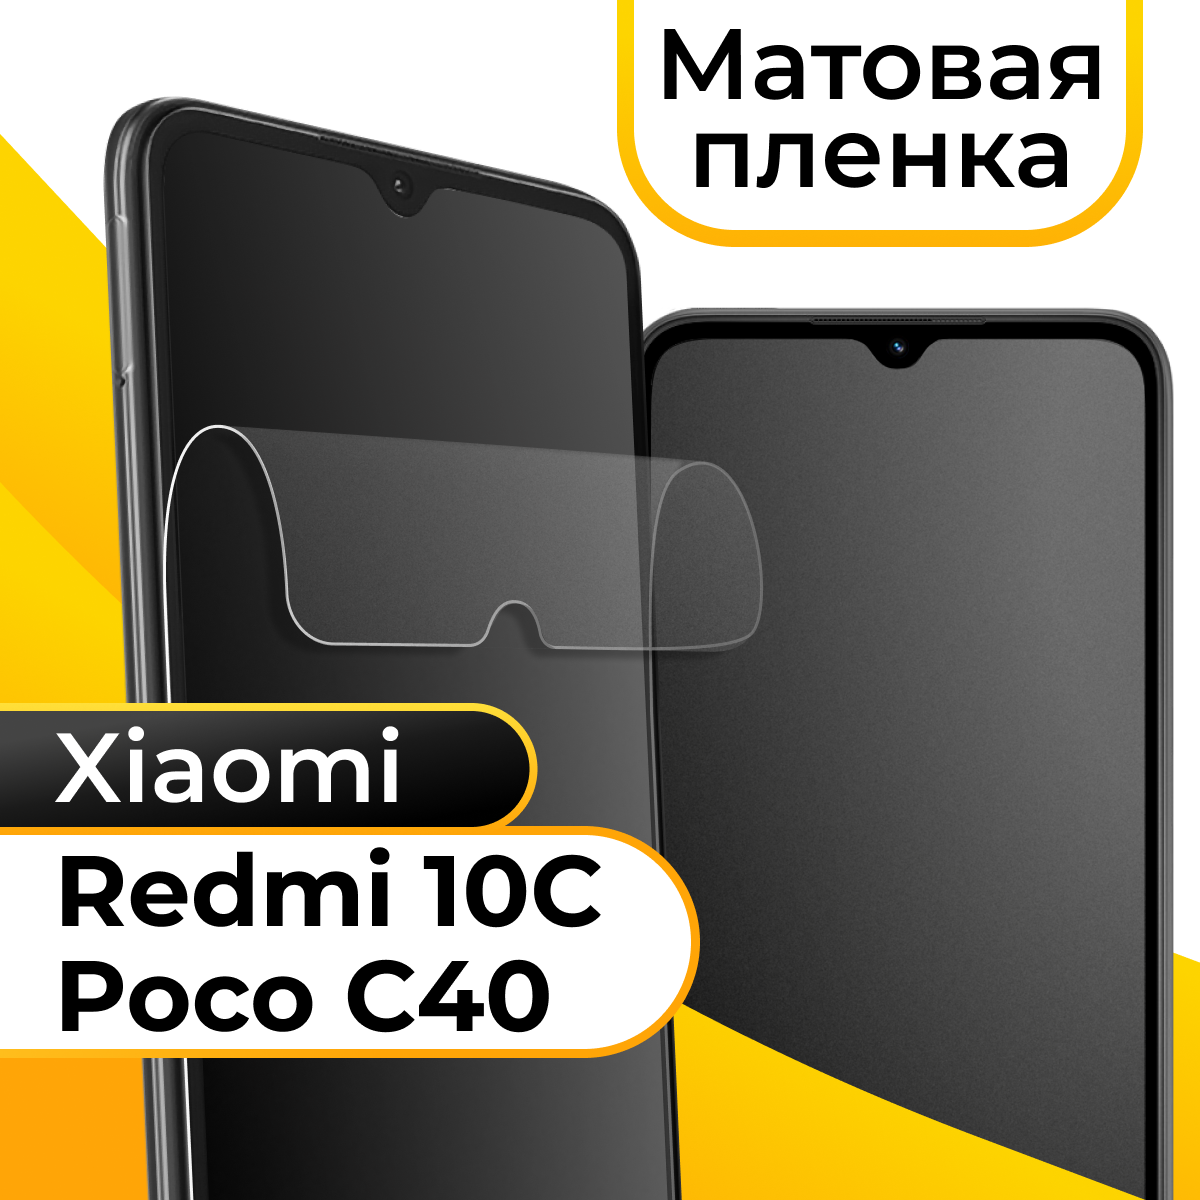 Матовая пленка для смартфона Xiaomi Redmi 10C и Poco C40 / Защитная противоударная пленка на телефон Сяоми Редми 10С и Поко С40 / Гидрогелевая пленка